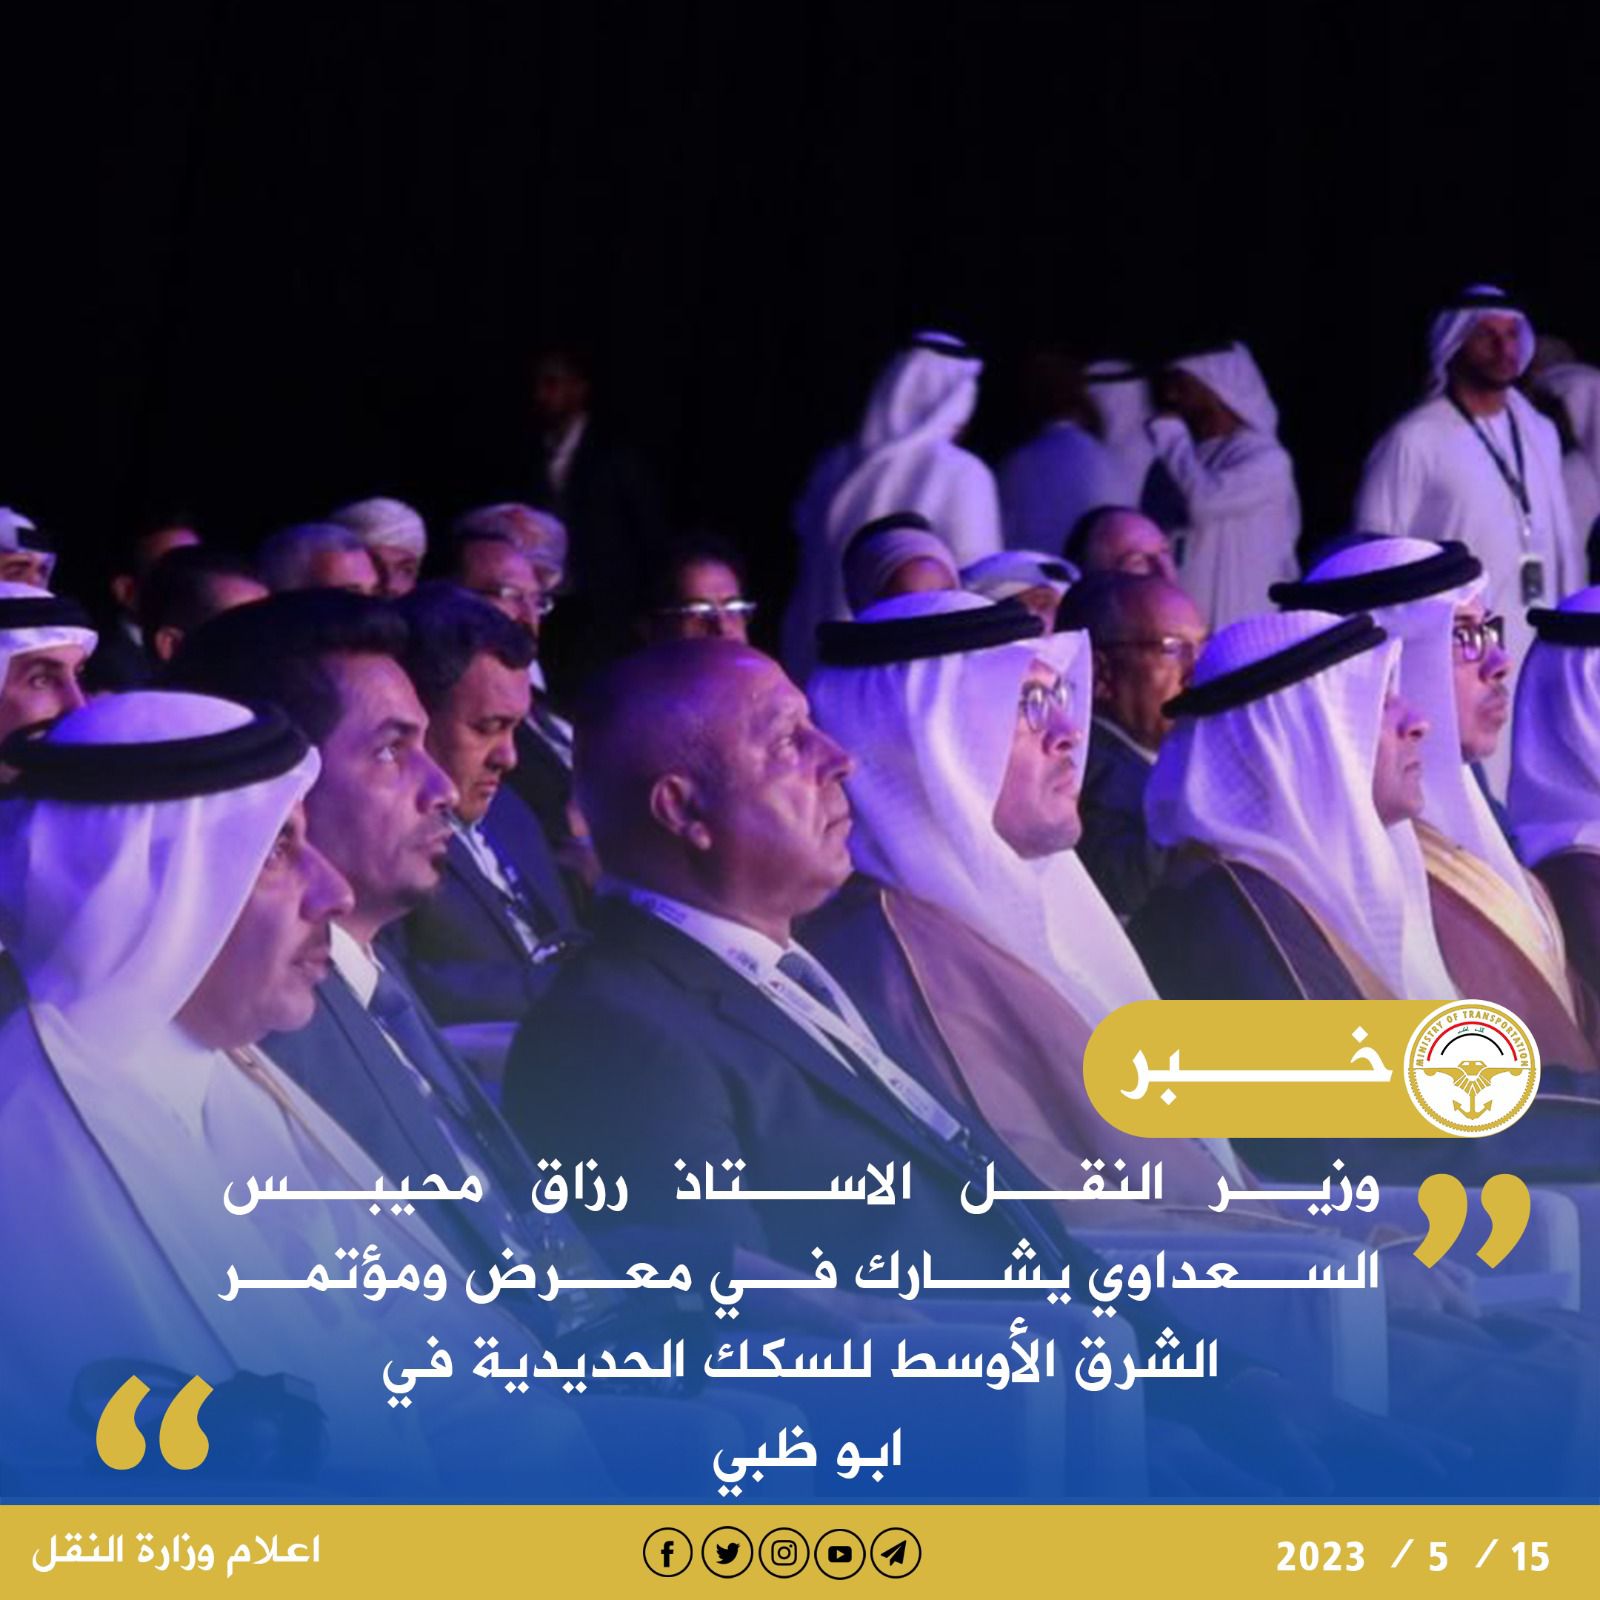 وزير النقل يشارك في معرض ومؤتمر الشرق الأوسط للسكك الحديدية في ابو ظبي